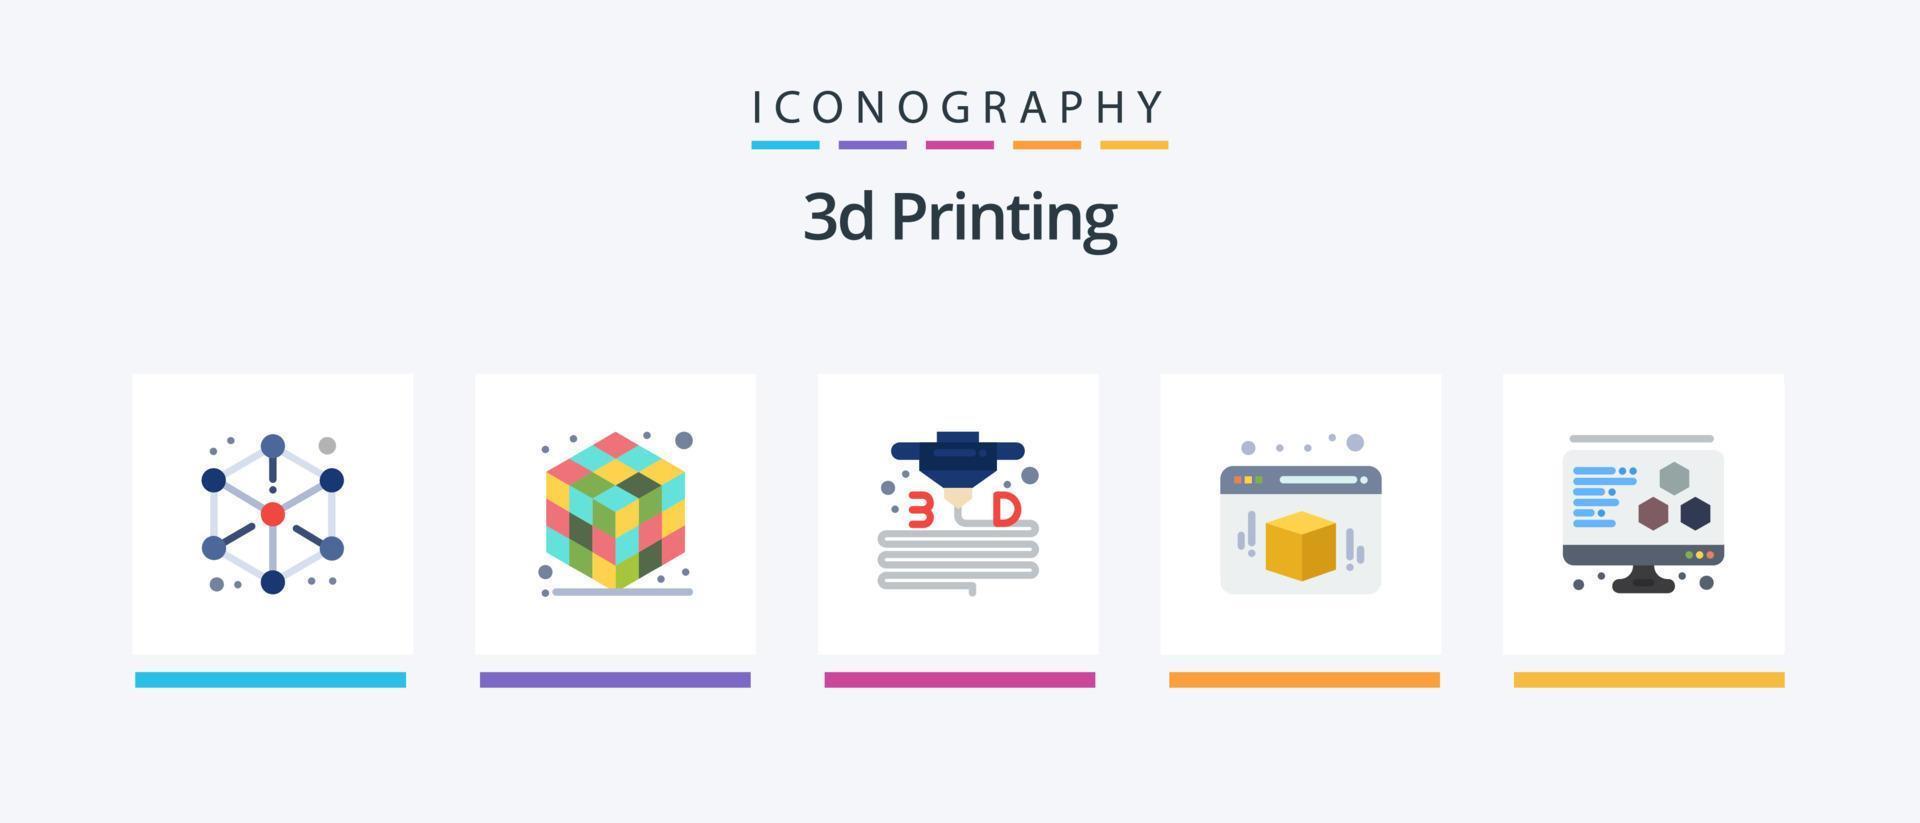 Paquete de 5 iconos planos de impresión 3d que incluye d. cubo. 3d. caja. impresora. diseño de iconos creativos vector